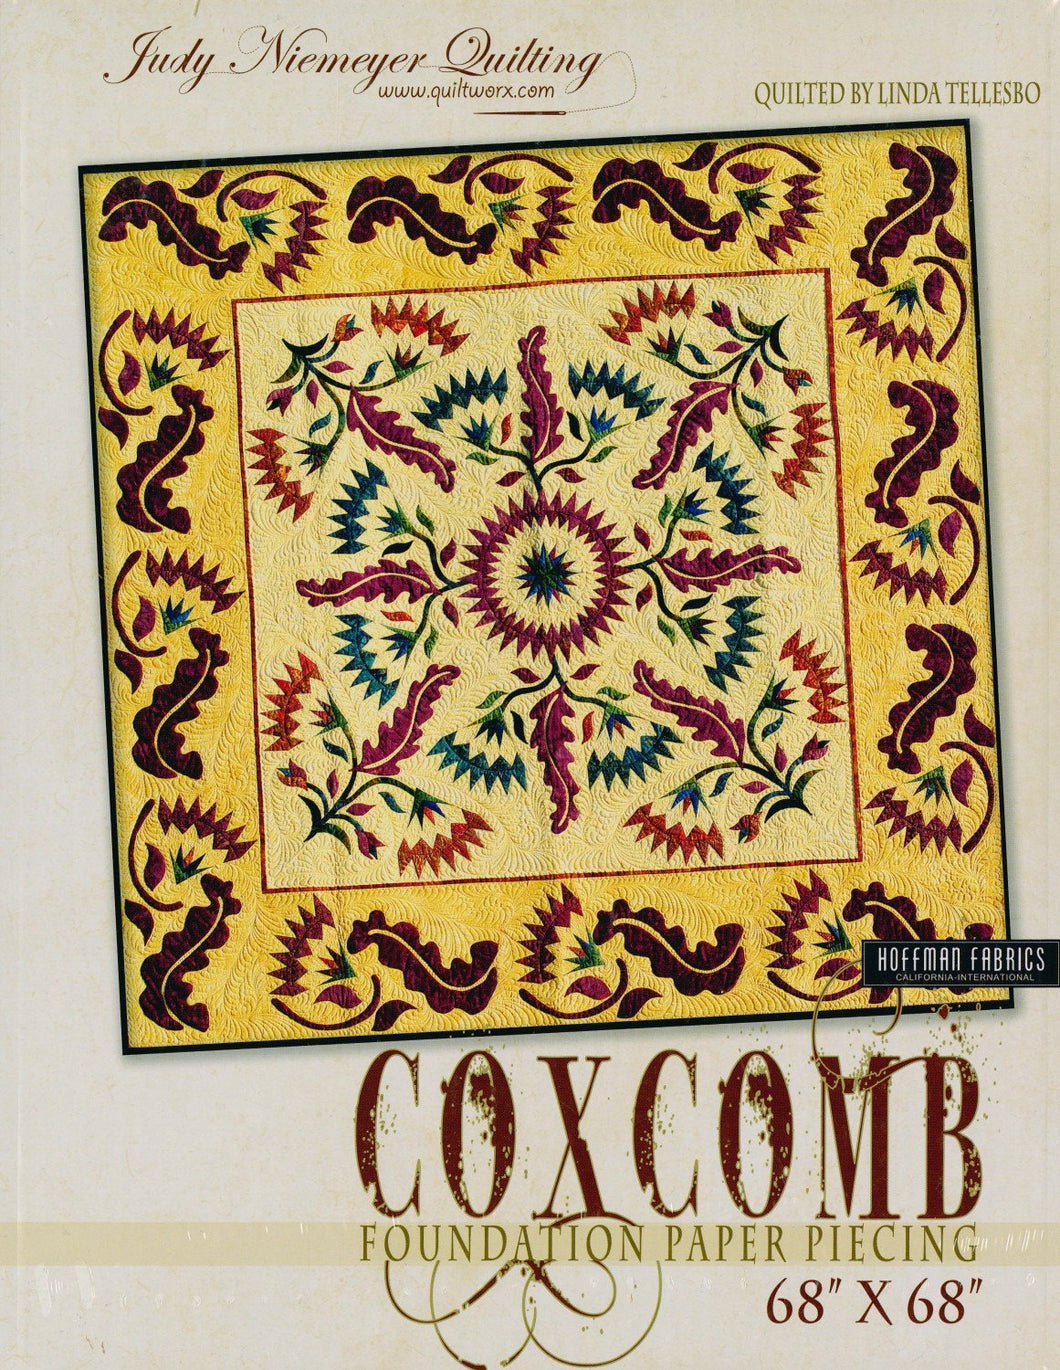 COXCOMB by Judy Niemeyer